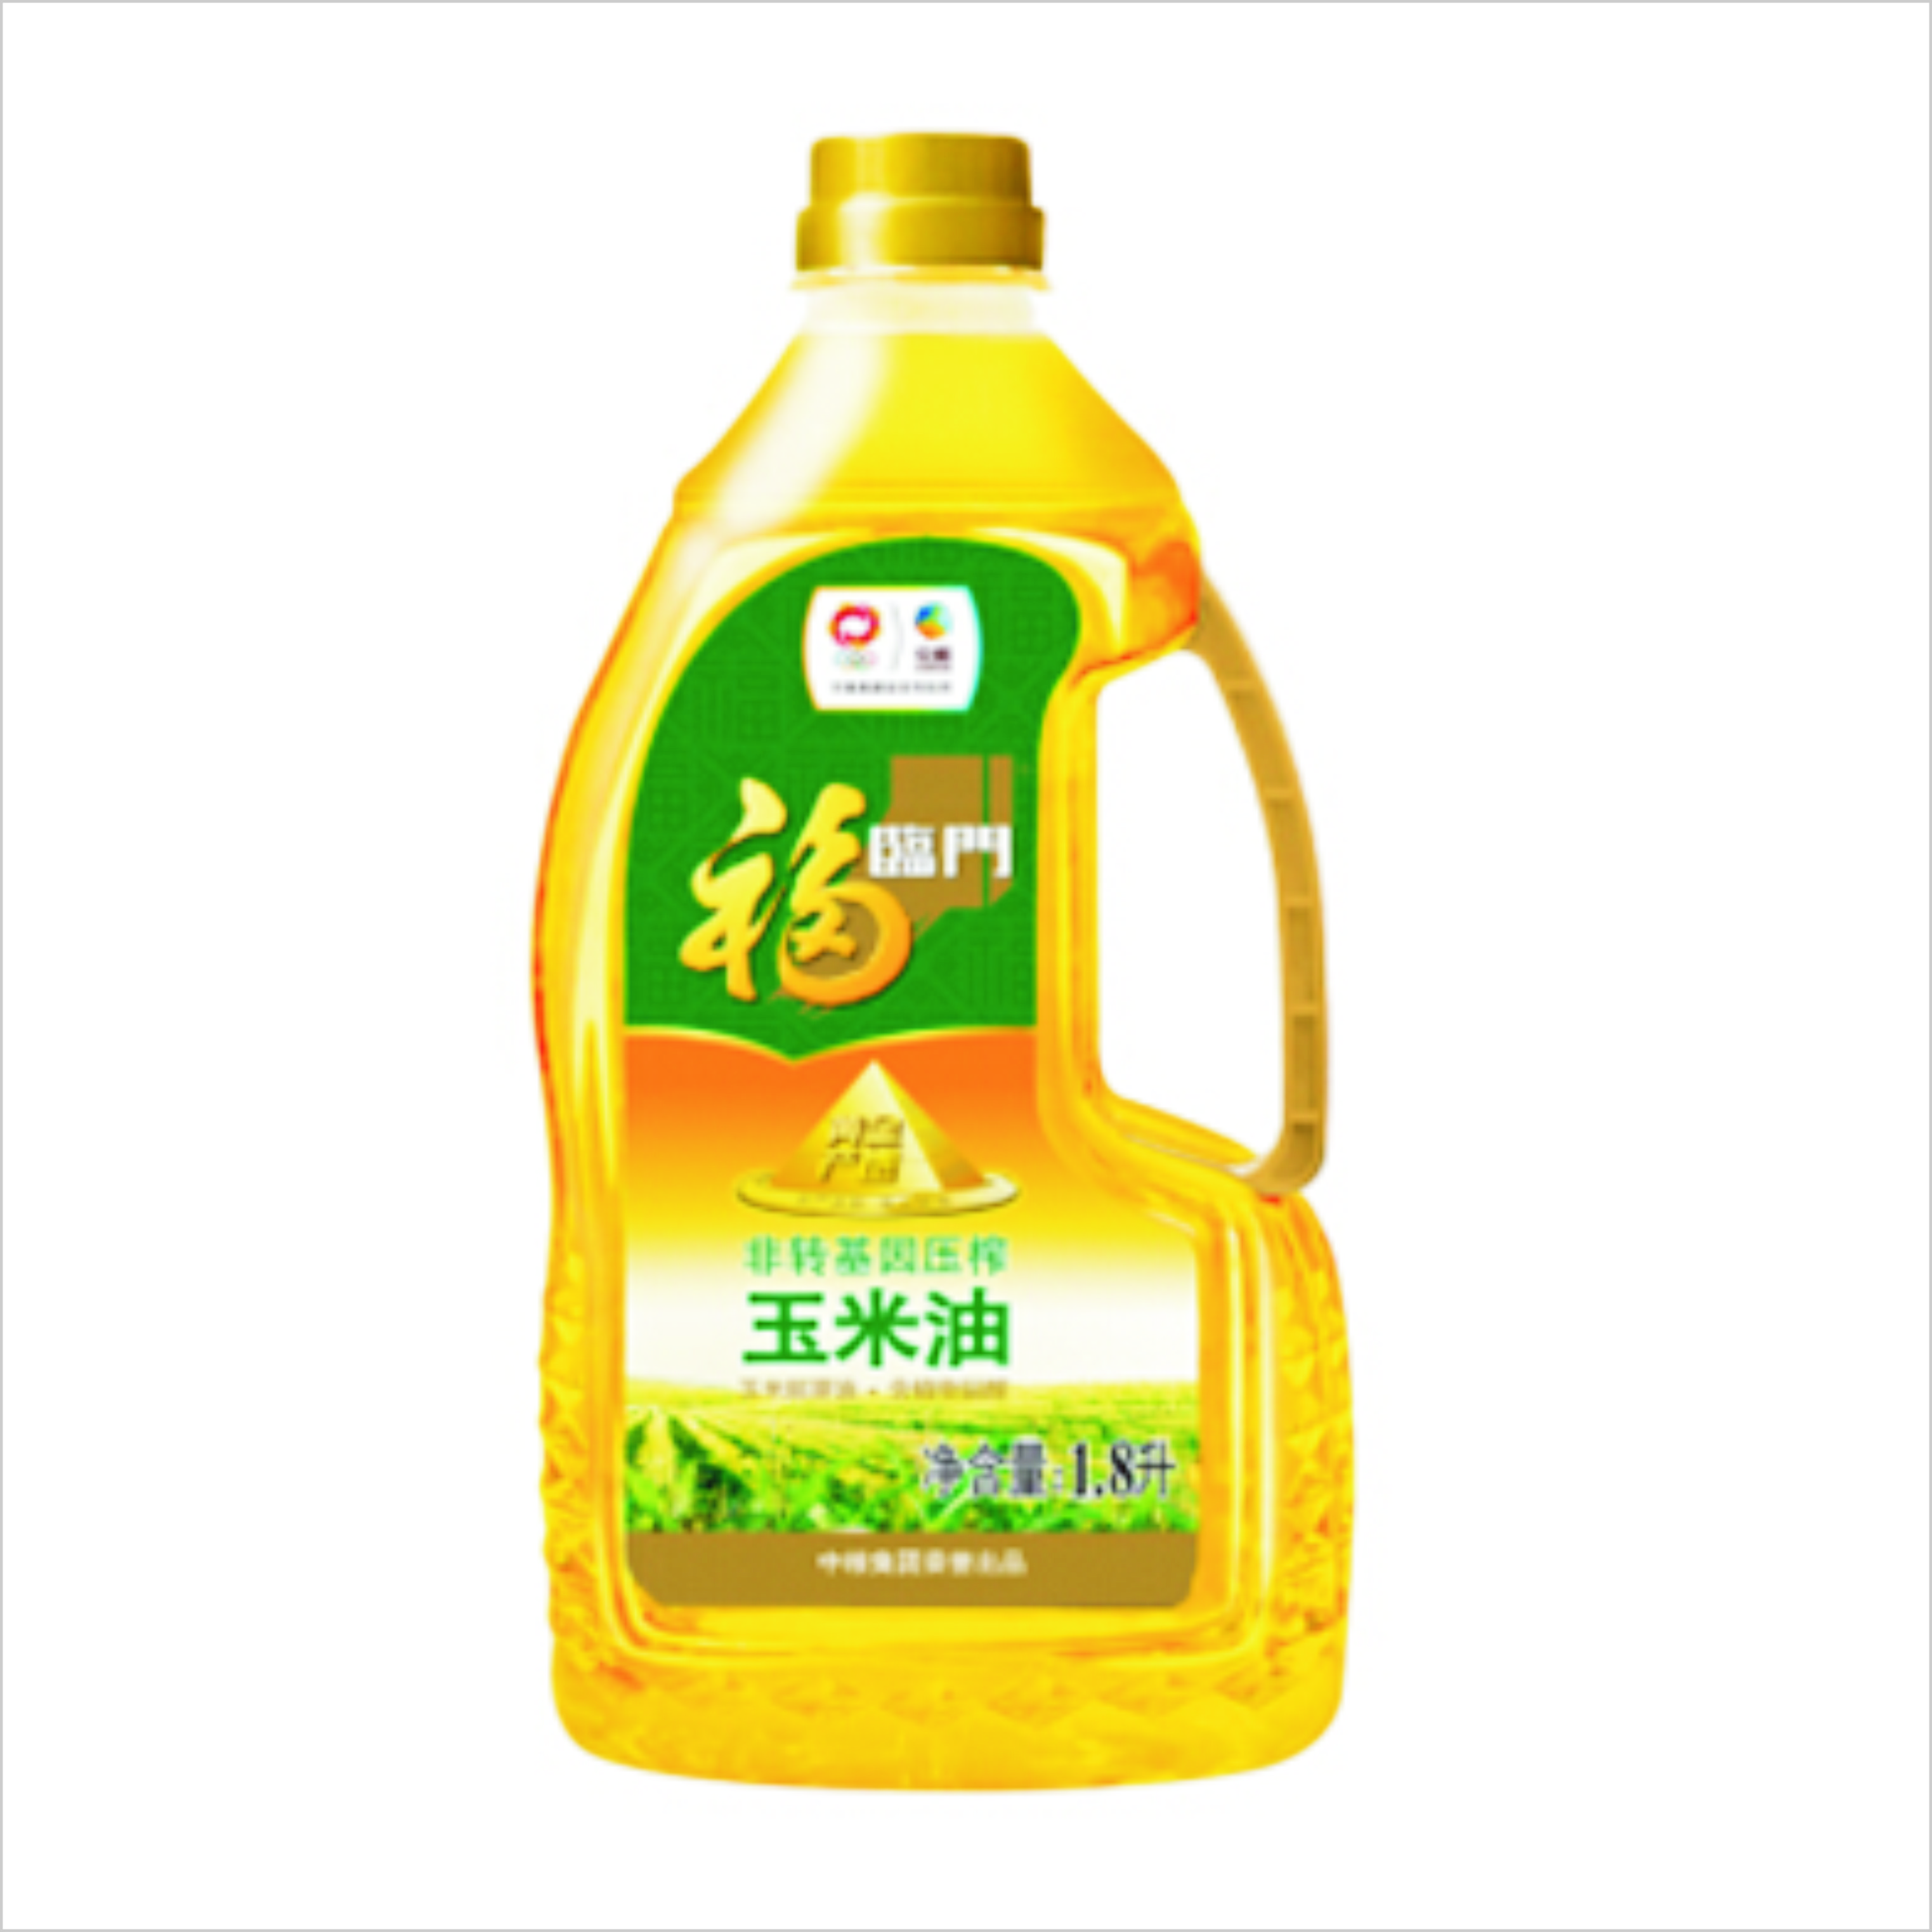 福临门 食用油 非转基因 压榨一级 黄金产地玉米胚芽油1.8L 中粮出品